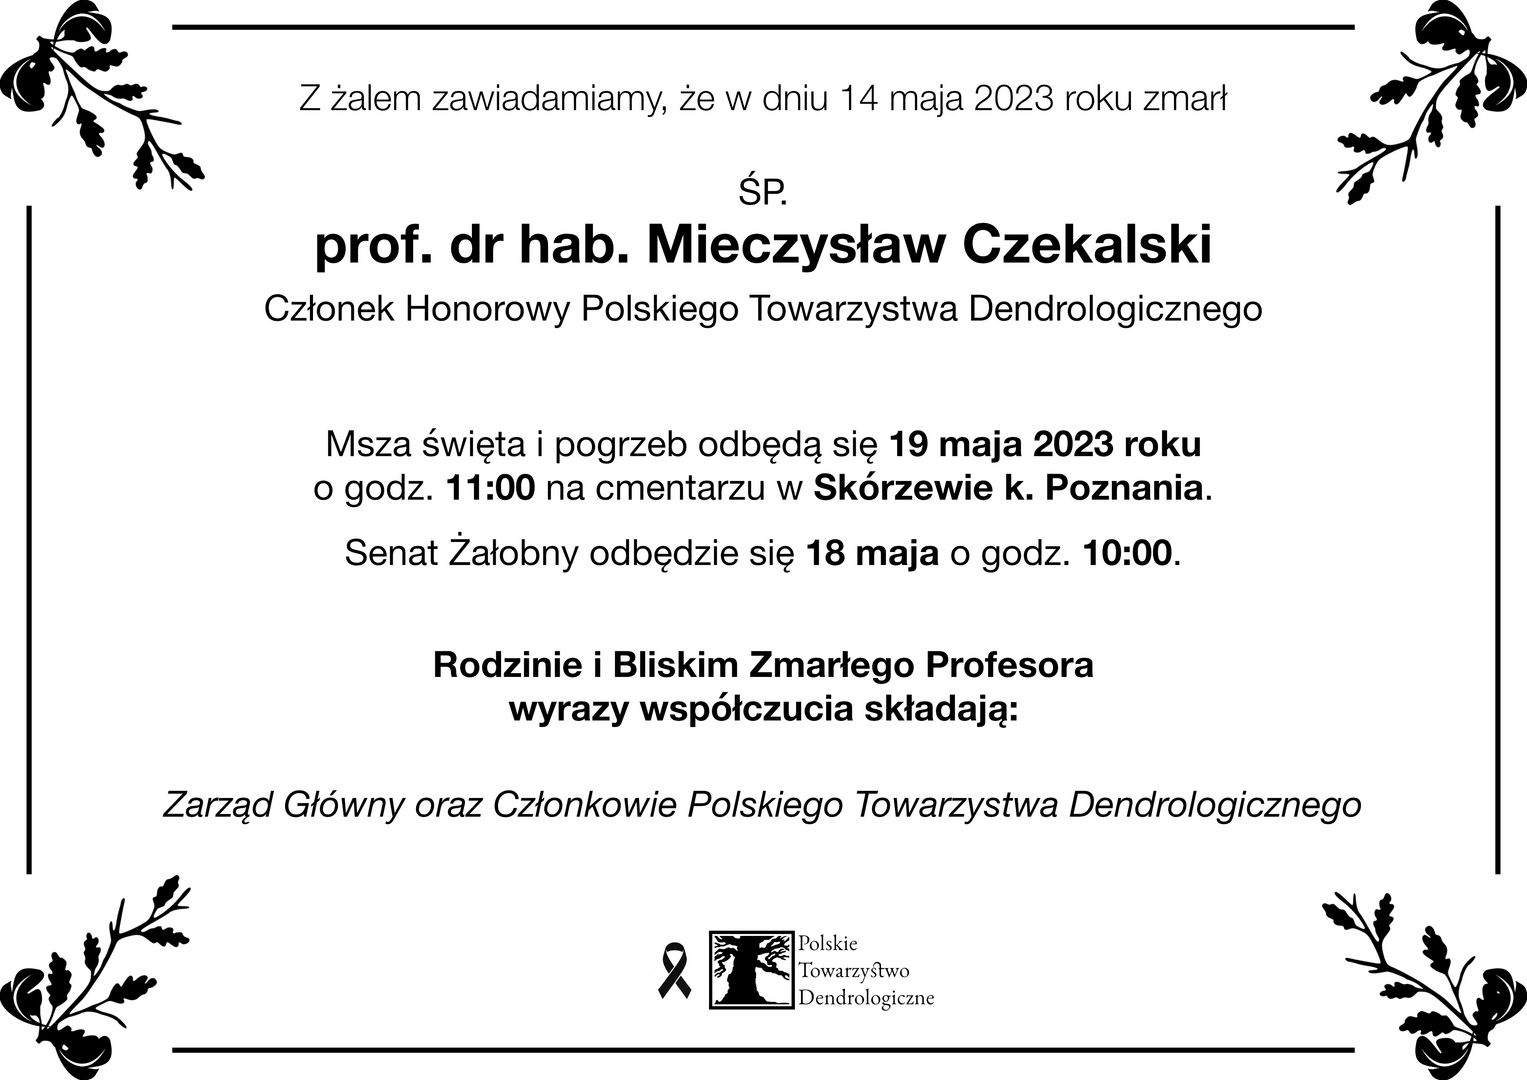 14.05.2023 r. zmarł prof. dr hab. Mieczysław Czekalski, członek honorowy Polskiego Towarzystwa Dendrologicznego. Pogrzeb 19.05.2023 r. o godz. 11.00 na cmentarzu w Skórzewie k. Poznania.